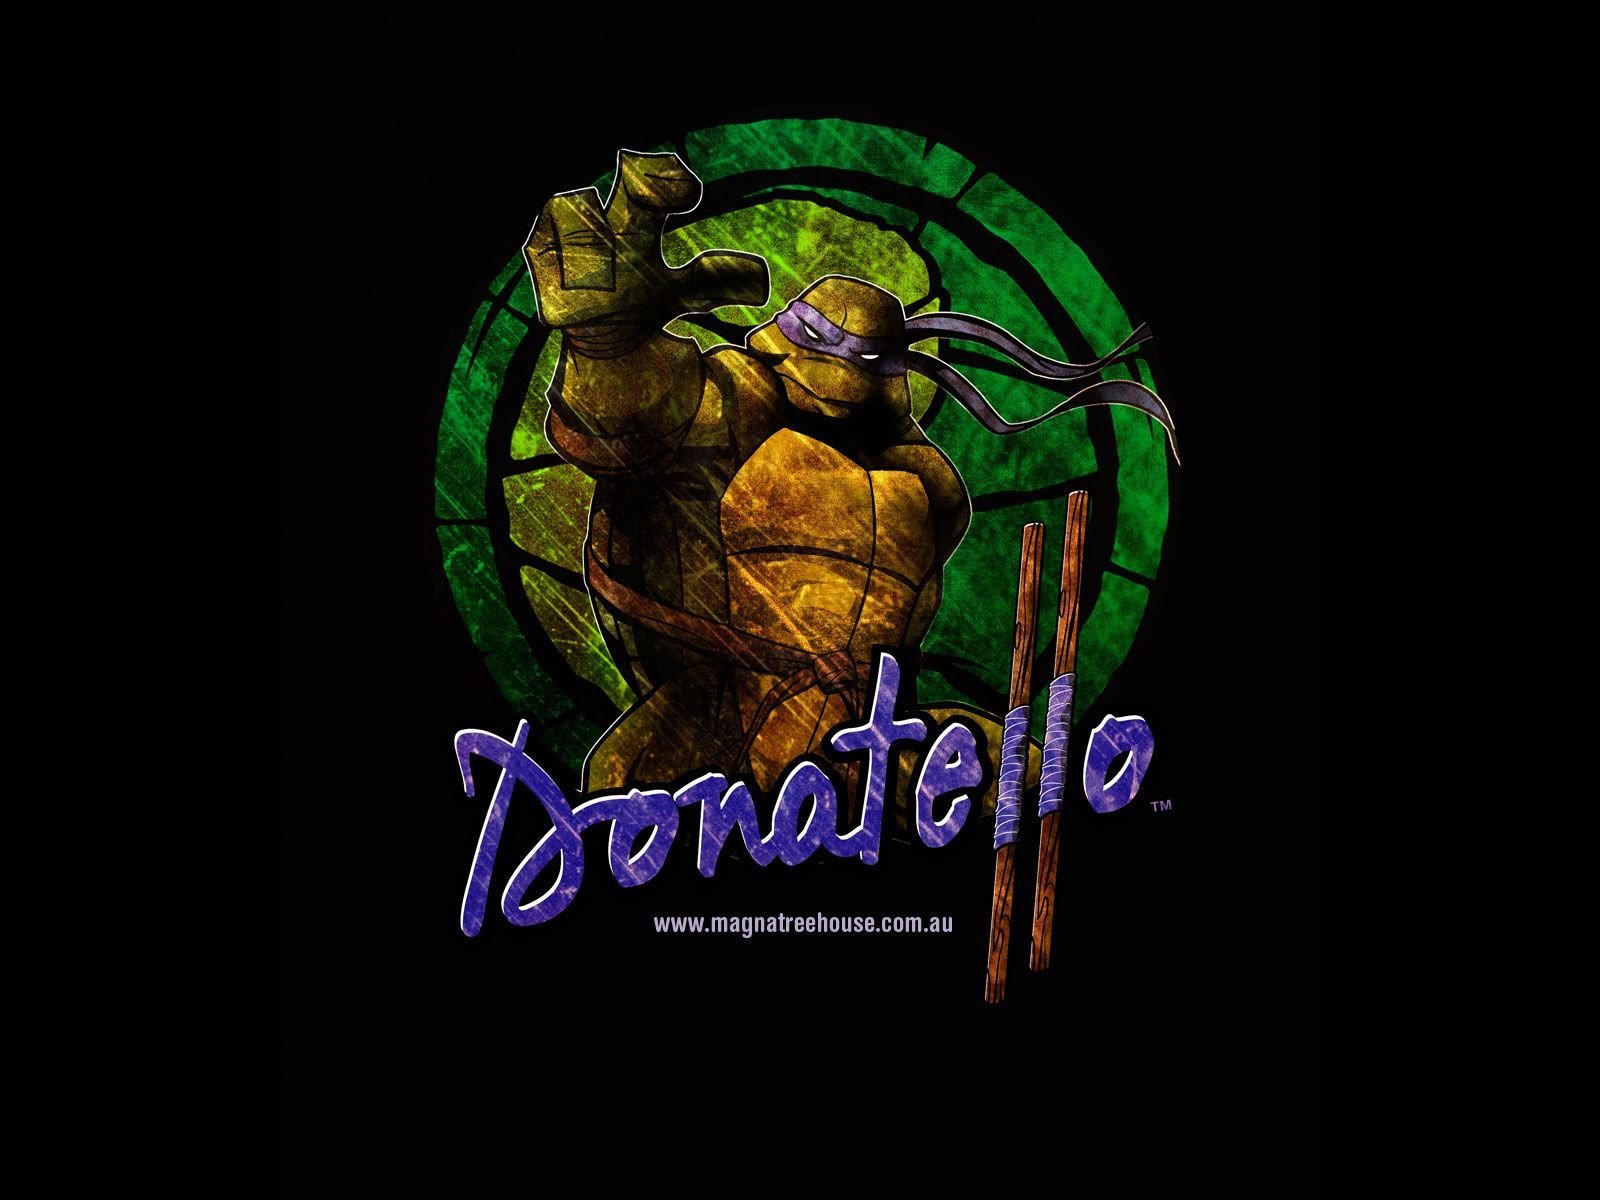 TMNT Donatello Wallpaper. Donatello Wallpaper Party, Ninja Turtle Donatello Wallpaper and TMNT Donatello Wallpaper